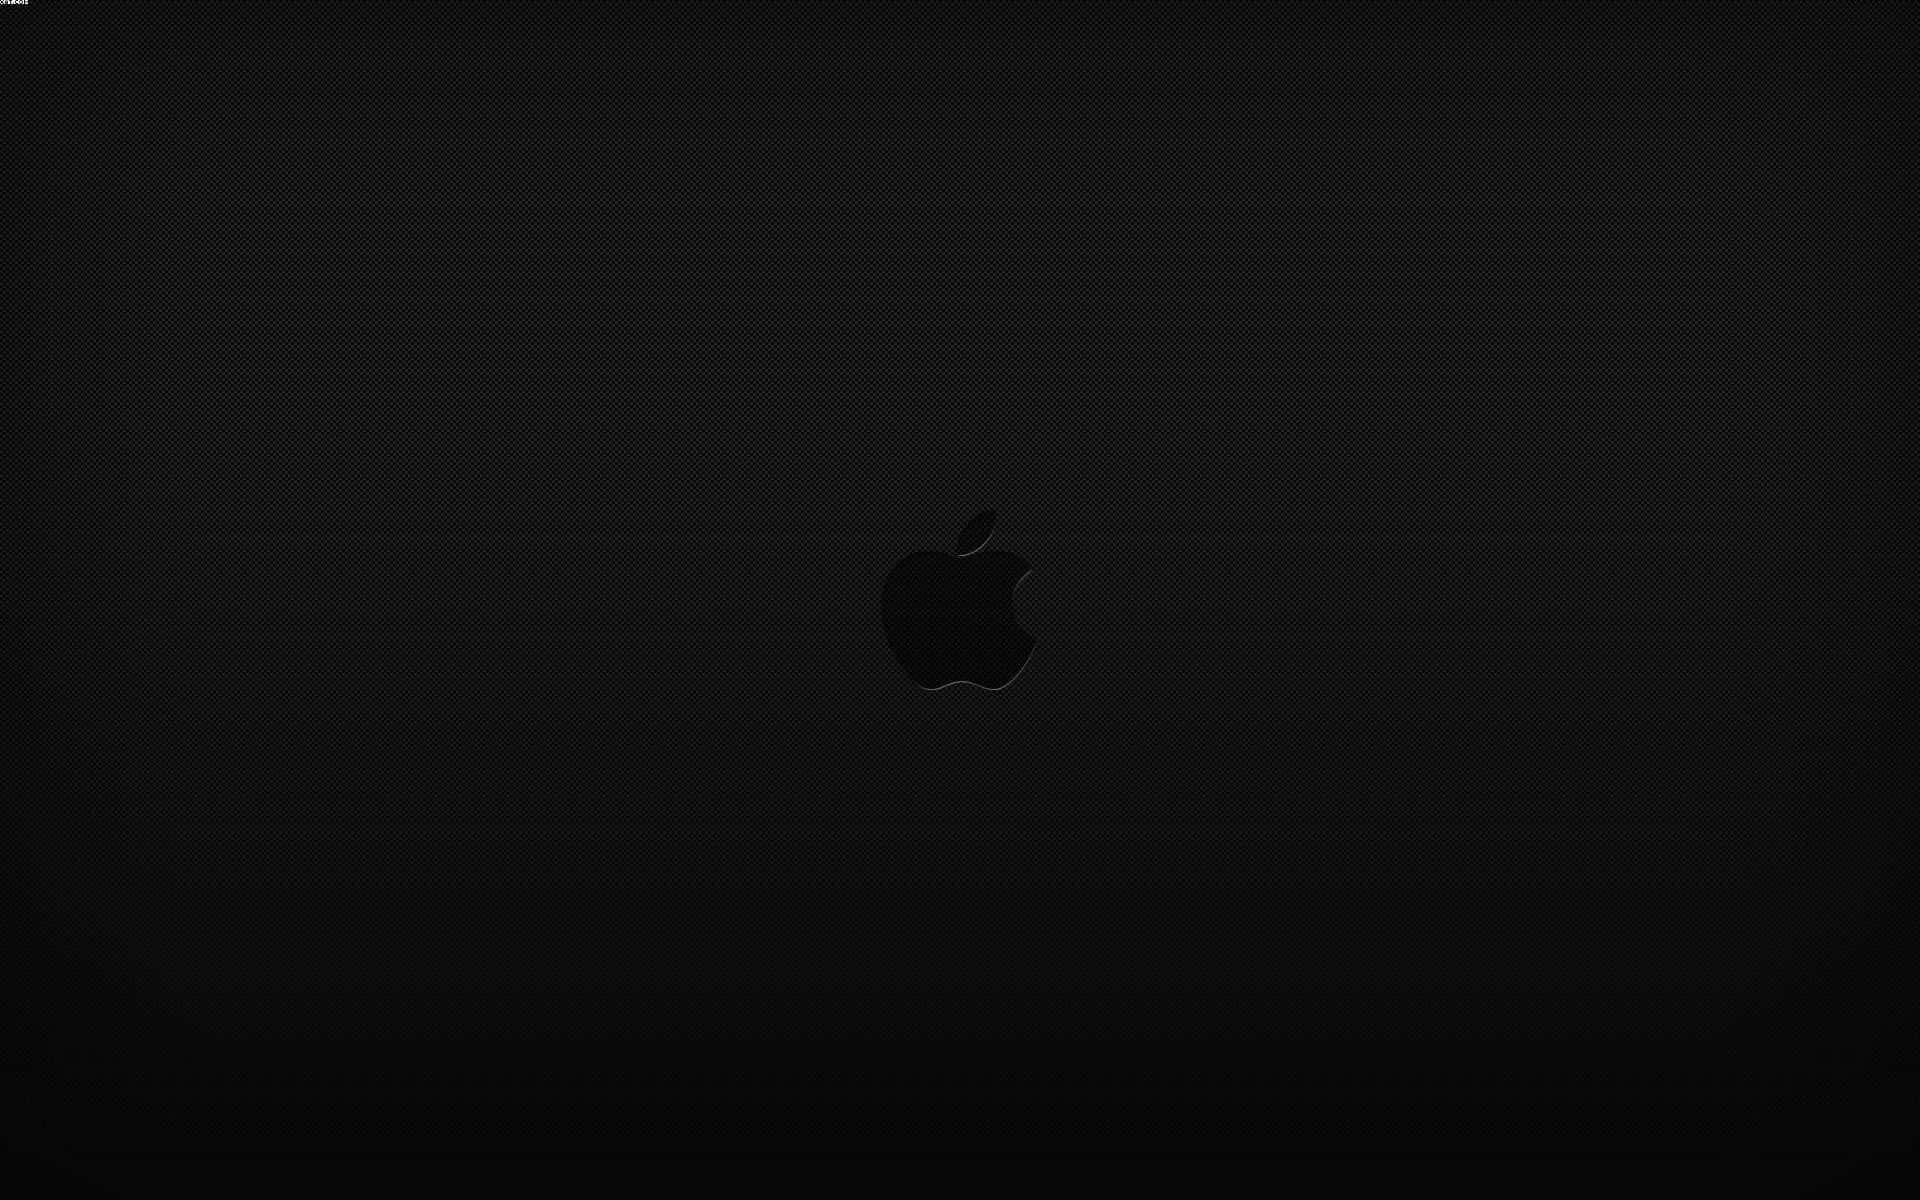 Einschwarzer Hintergrund Mit Einem Apple-logo Wallpaper